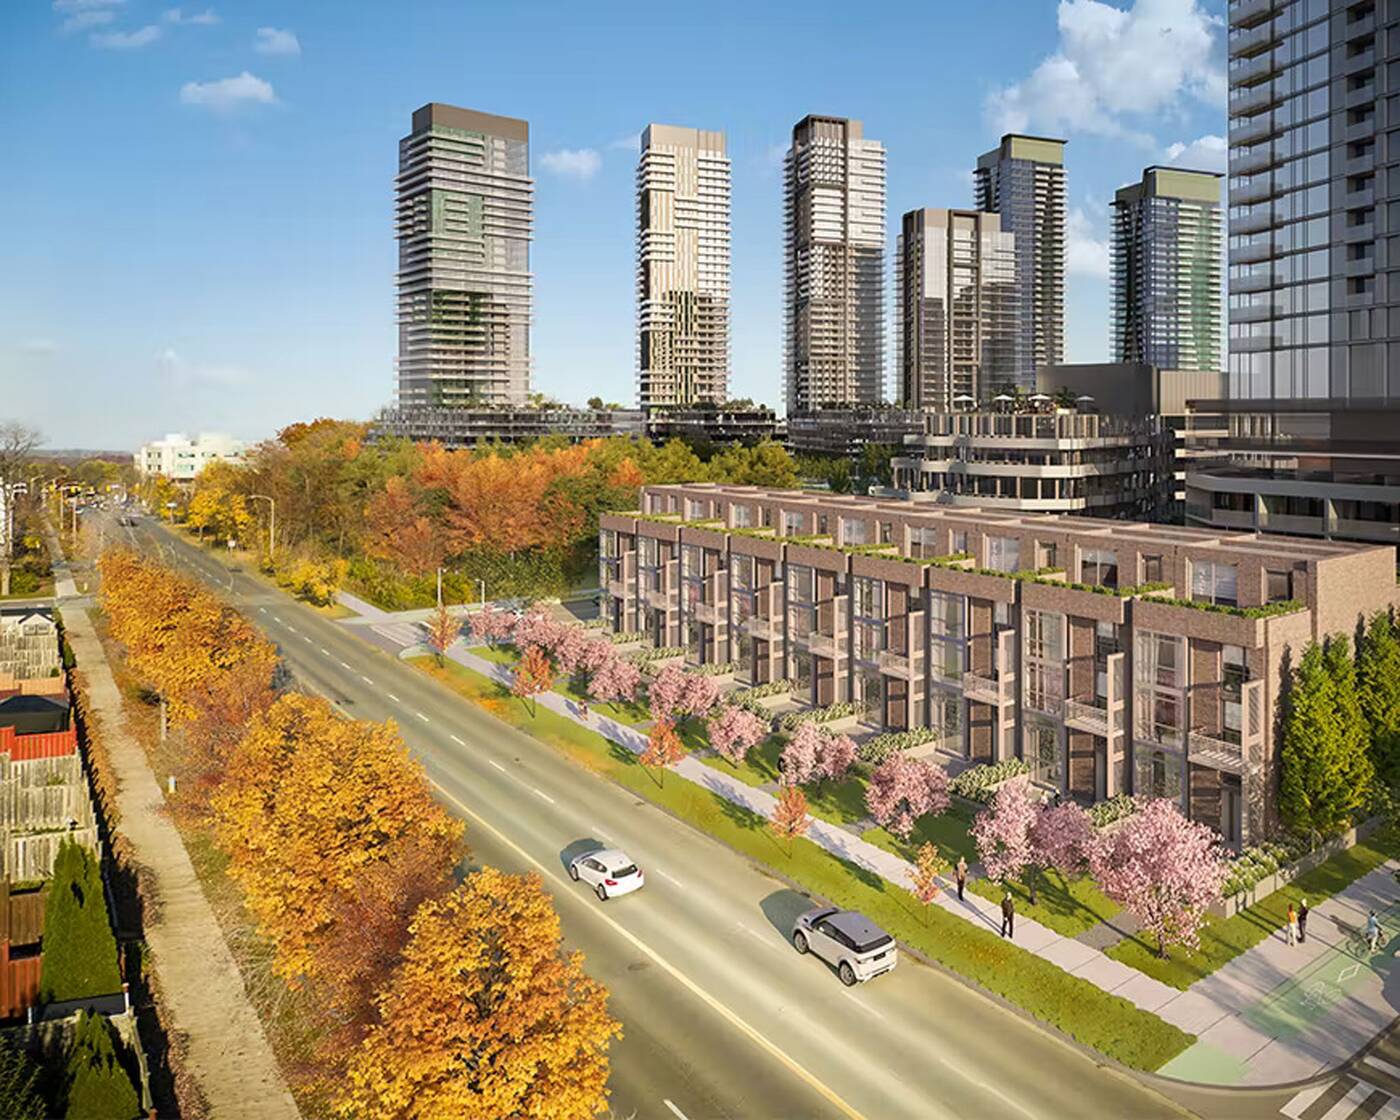 多伦多大型商场将拆除改建成公寓住宅楼和公园6